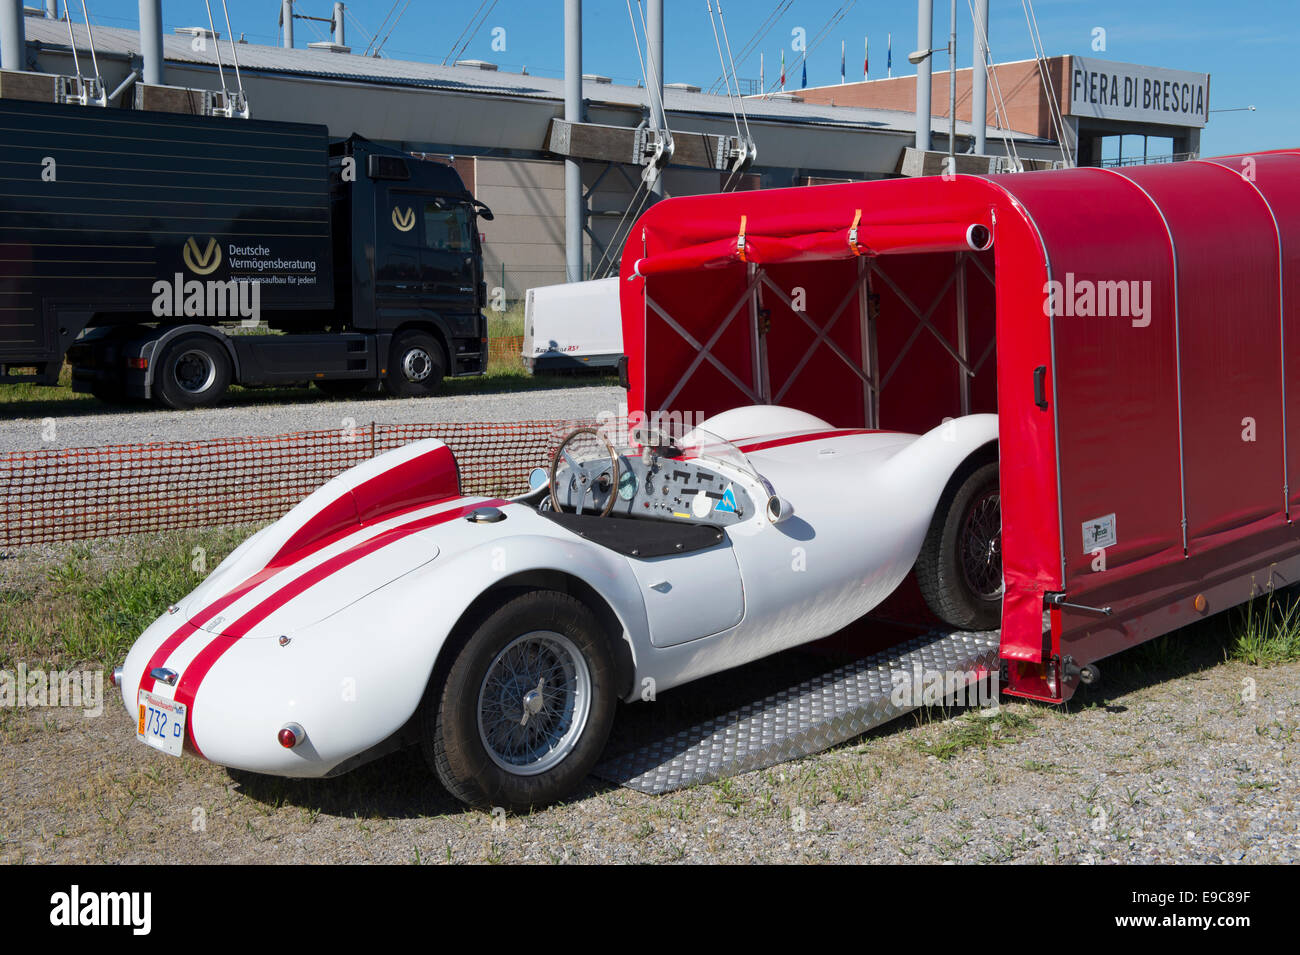 Ferrari anhänger -Fotos und -Bildmaterial in hoher Auflösung – Alamy